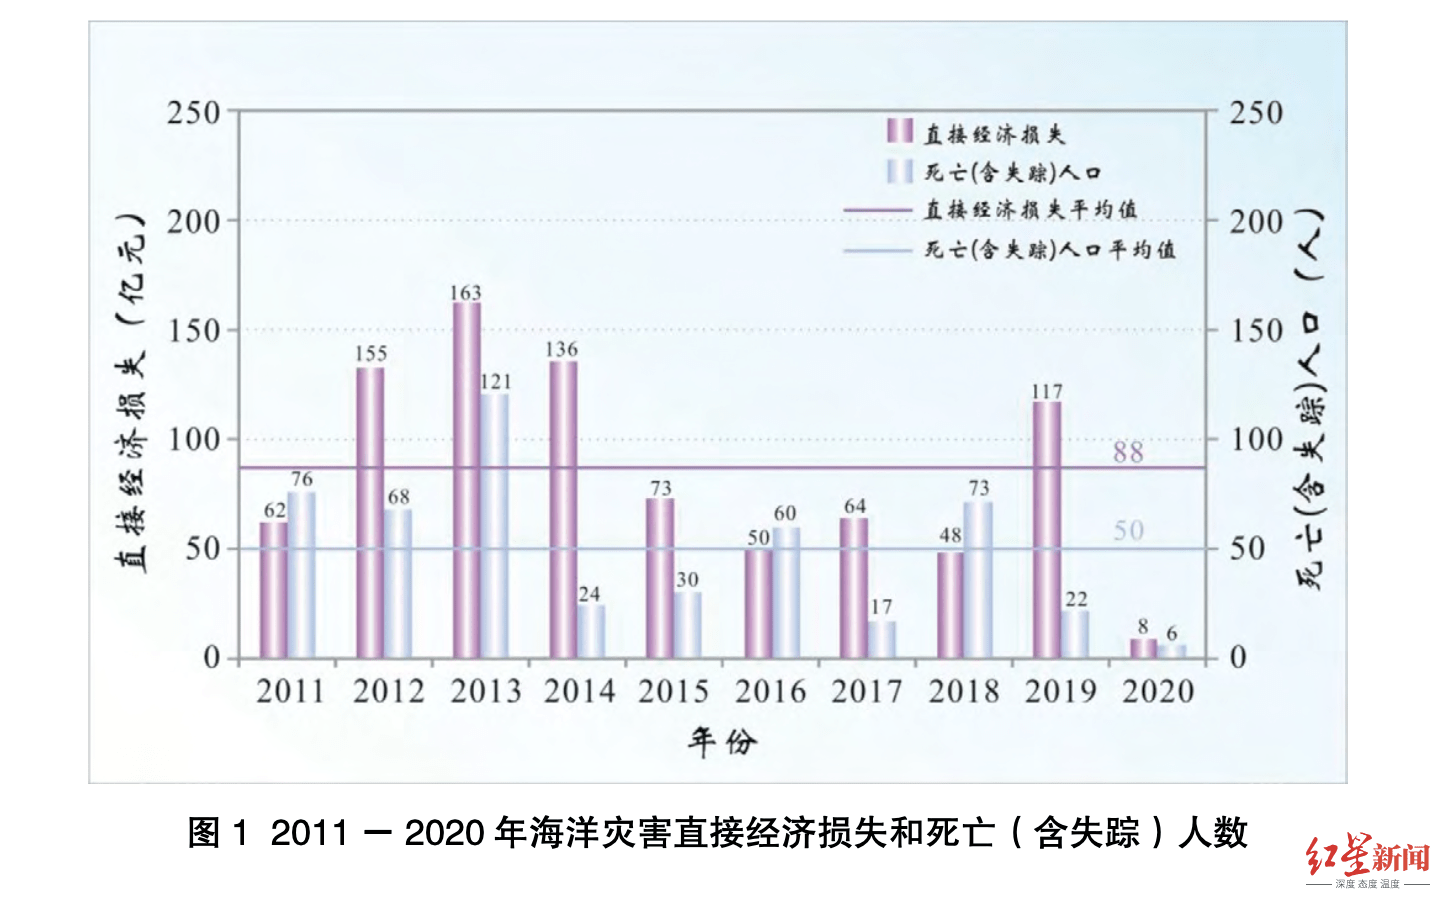 《中国海洋灾害公报》截图2020年,我国沿海共发生风暴潮过程14次(统计